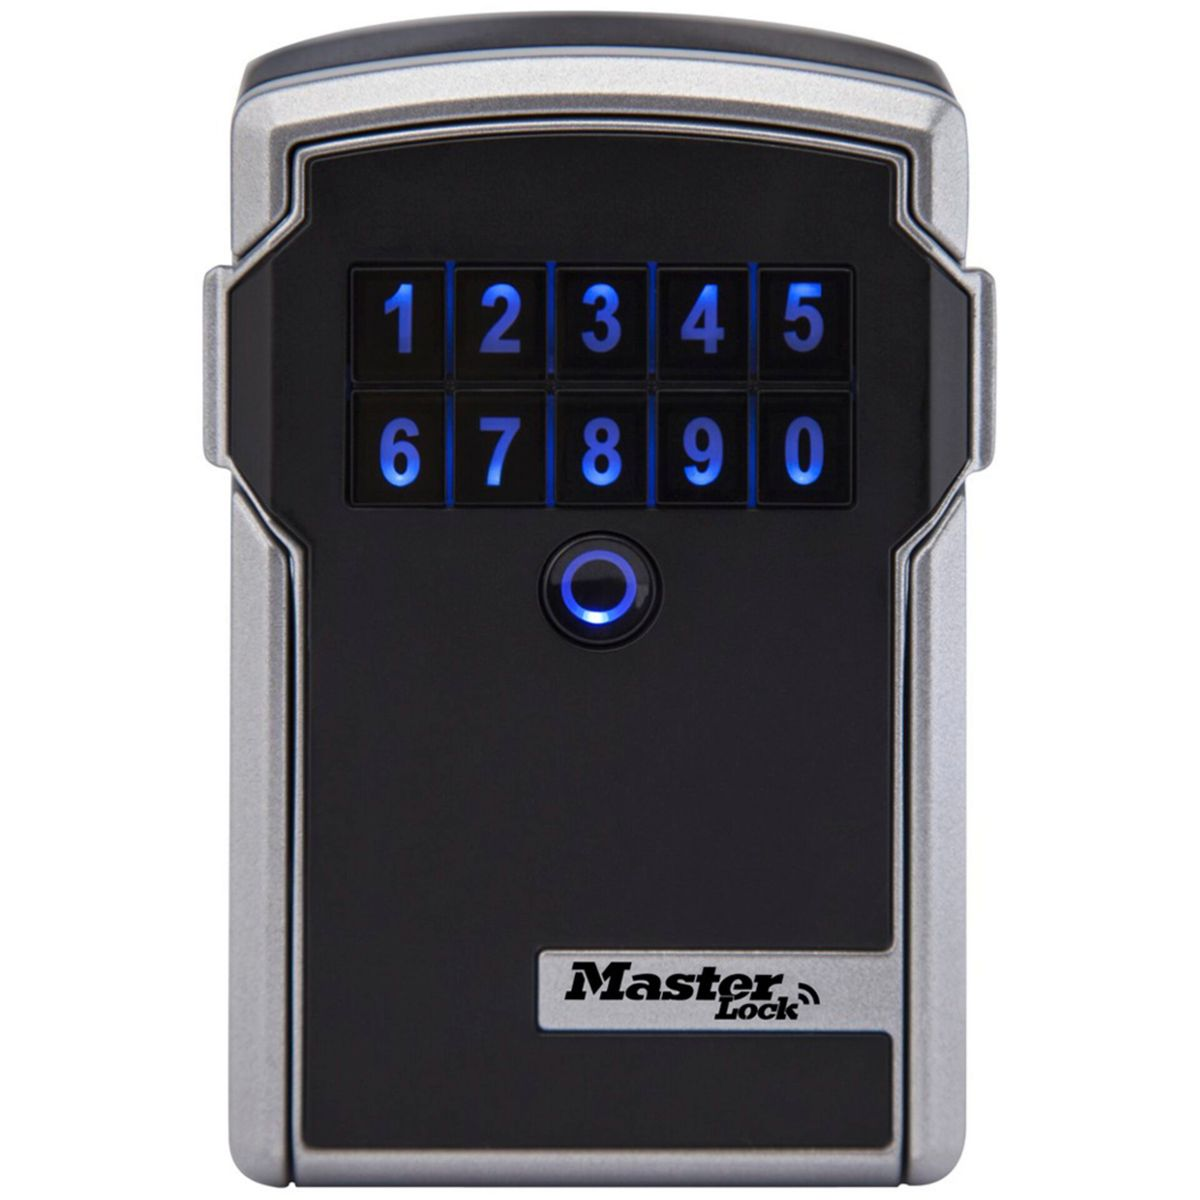 MASTERLOCK Master Lock grau 5441EURD Bluetooth / schwarz Schlüsselkasten Schlüsseltresor grau schwarz